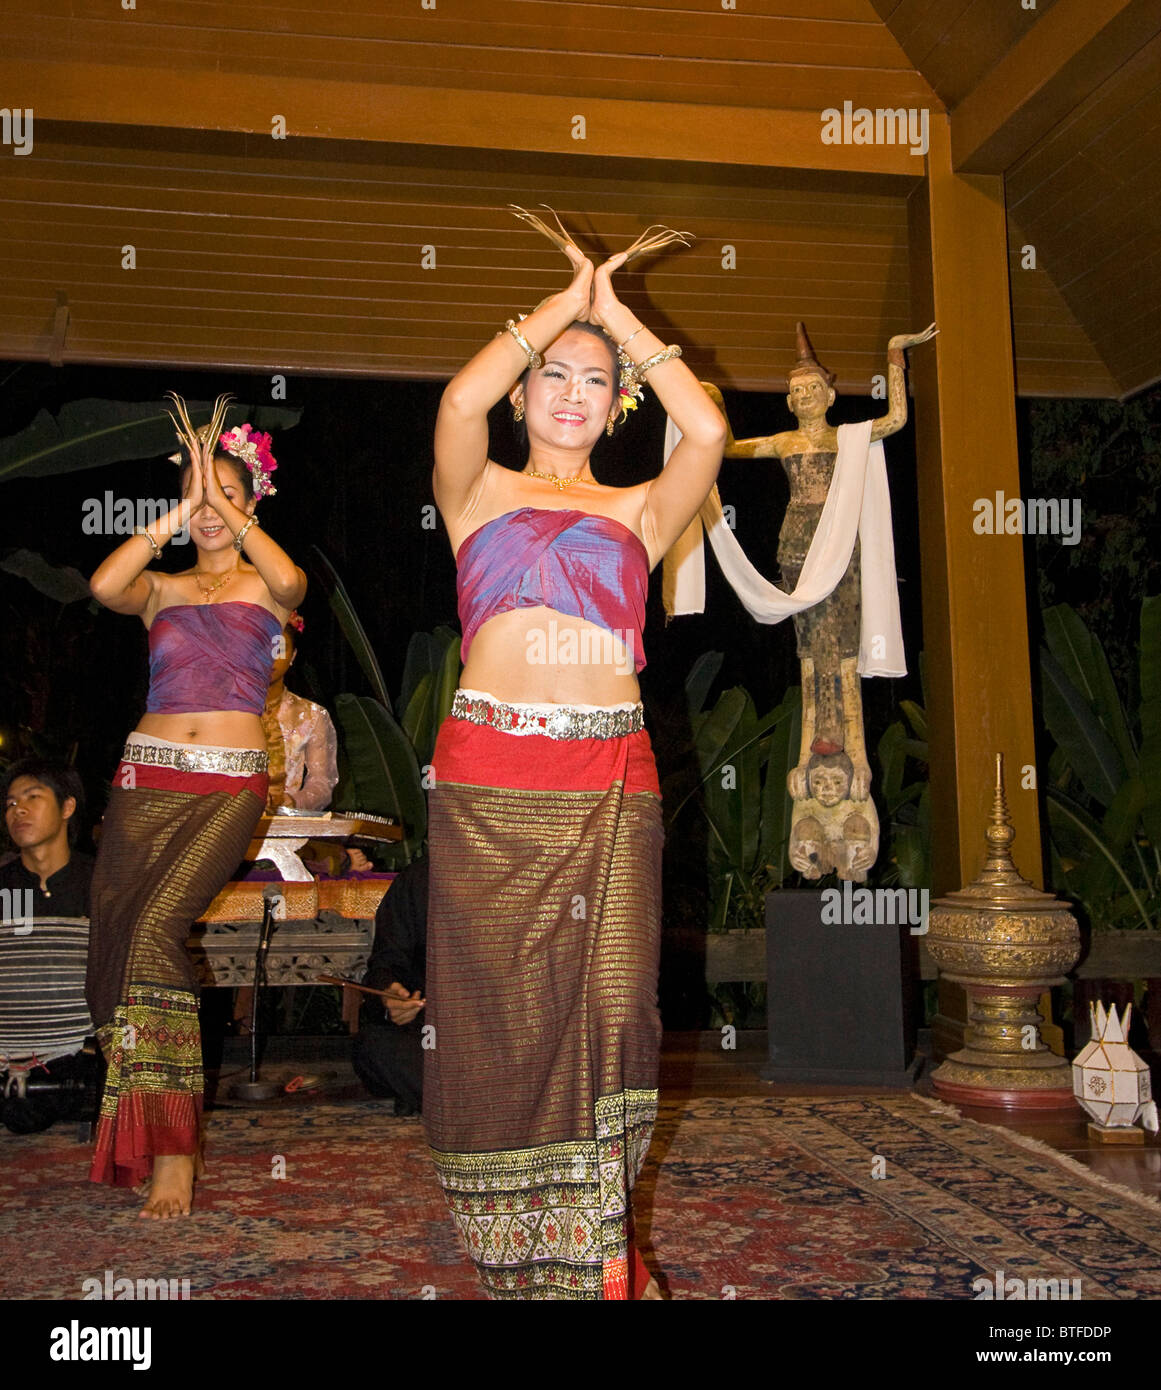 Les femmes thaïlandaises l'exécution de danses traditionnelles. Chiang Mai, Thaïlande. Banque D'Images